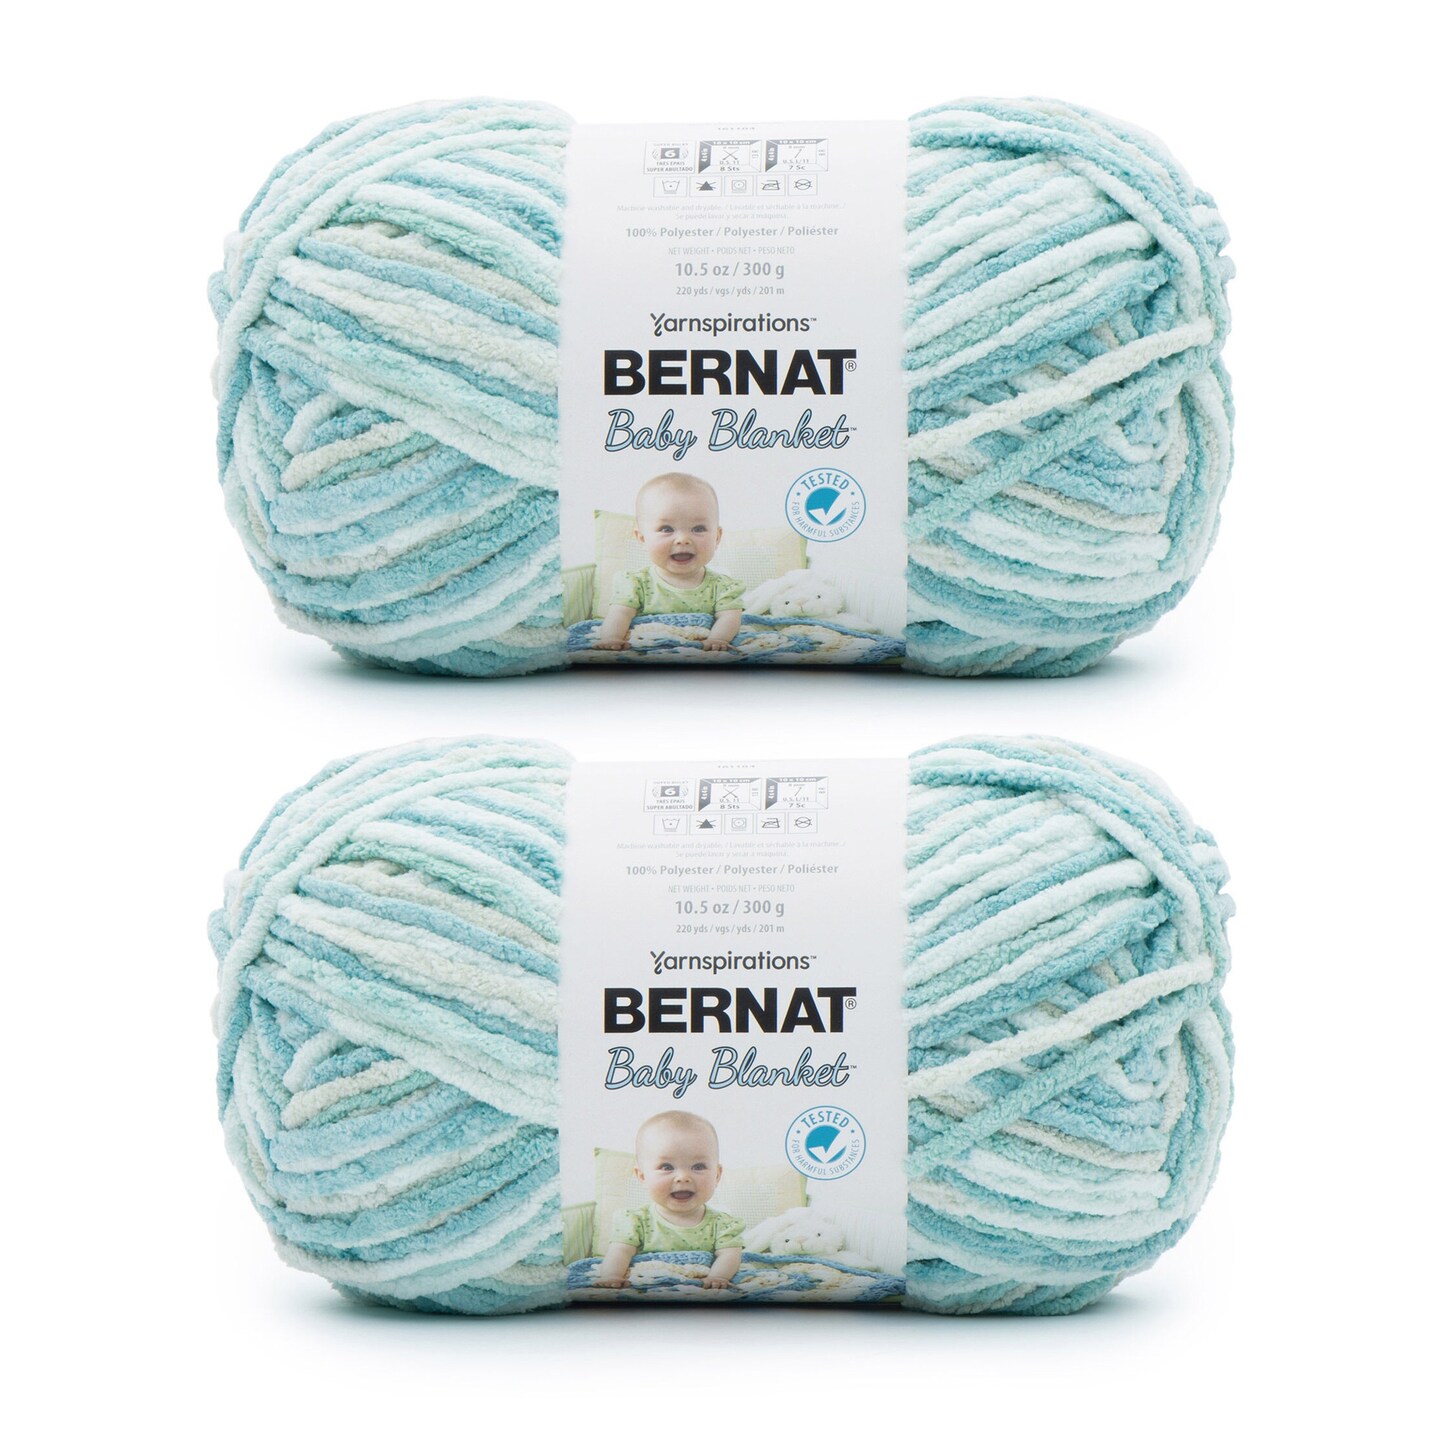 Bernat Baby Blanket Blue Green Yarn - 2 Pack of 300g/10.5oz - Polyester - 6  Super Bulky - 220 Yards - Knitting/Crochet